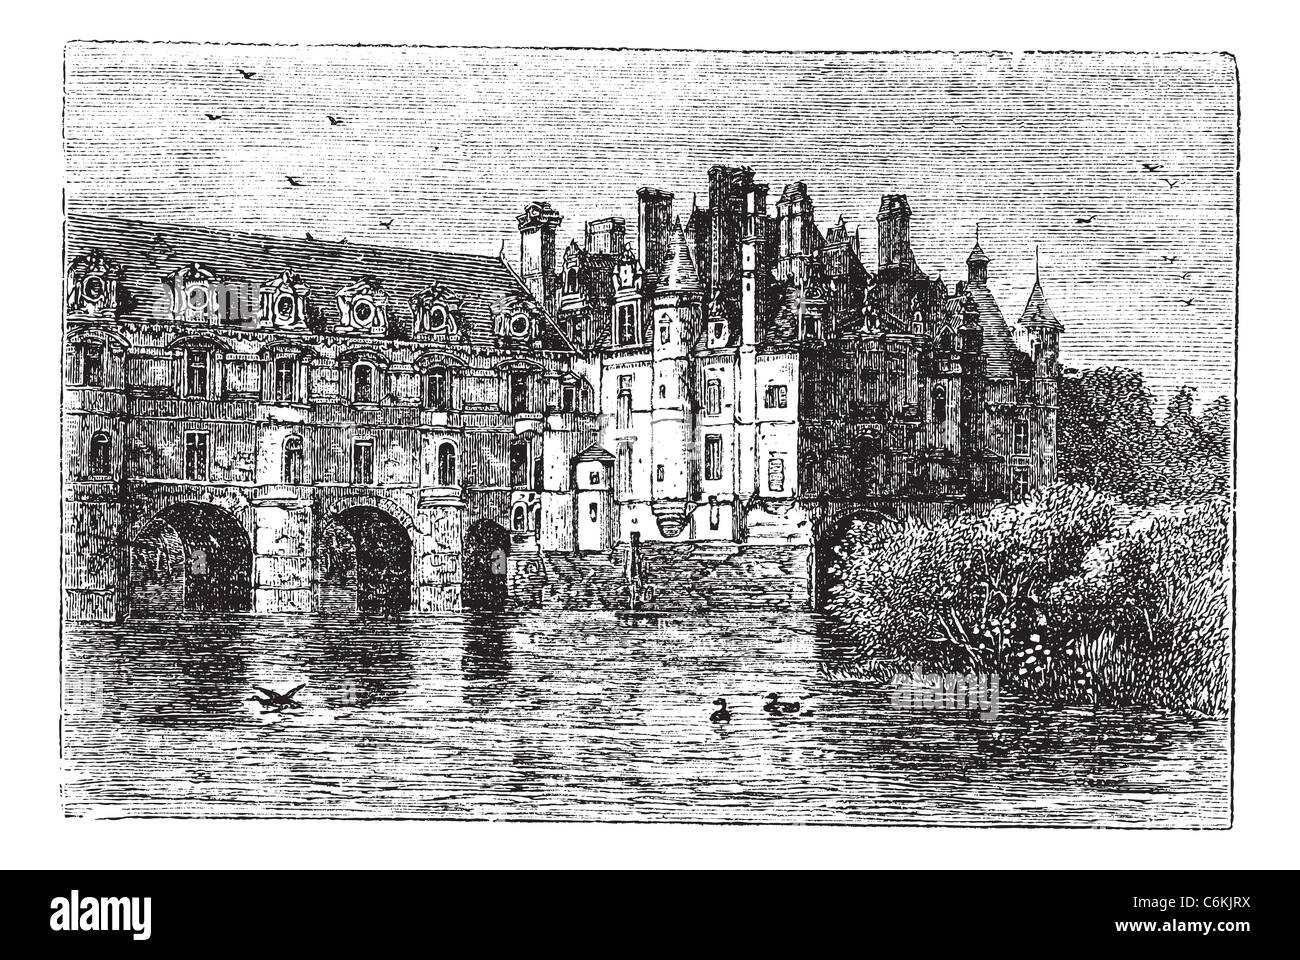 Château de Chenonceau, à Chenonceaux, France, pendant les années 1890, gravure d'époque. Vieille illustration gravée de la visite du Château de Chenonceau. Banque D'Images